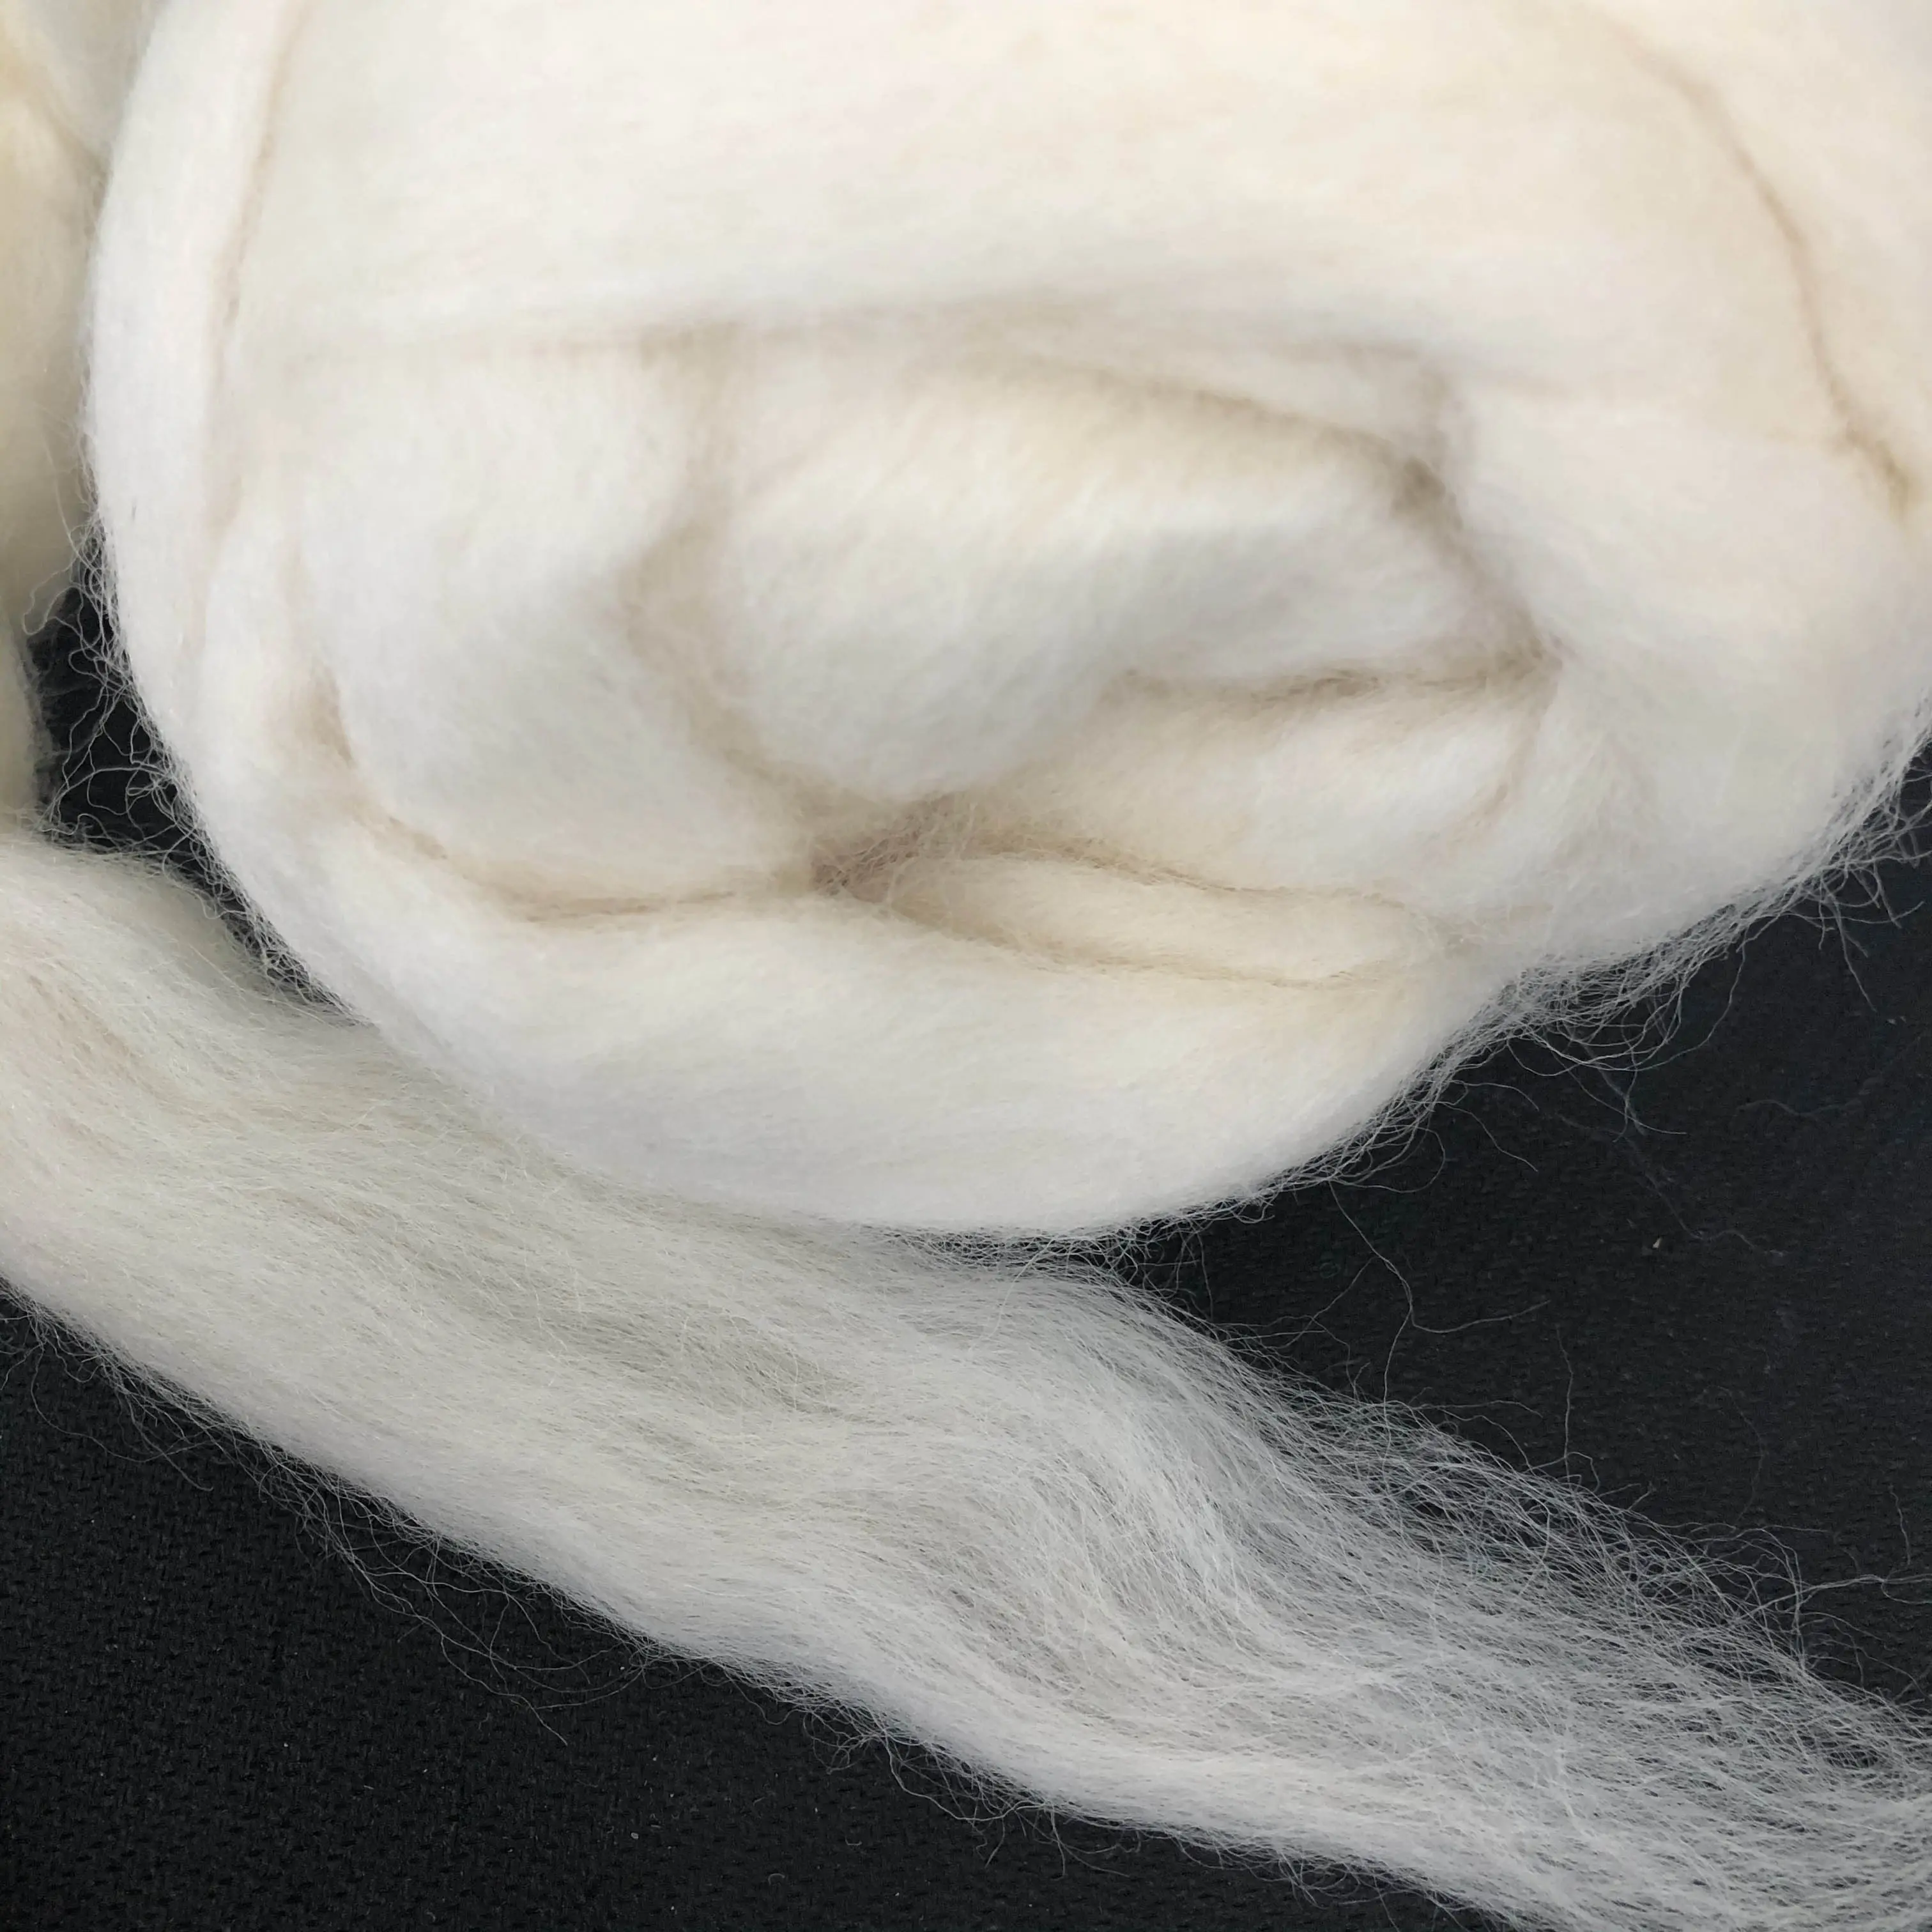 Top roving in lana australiana 19-21mic per filati per maglieria